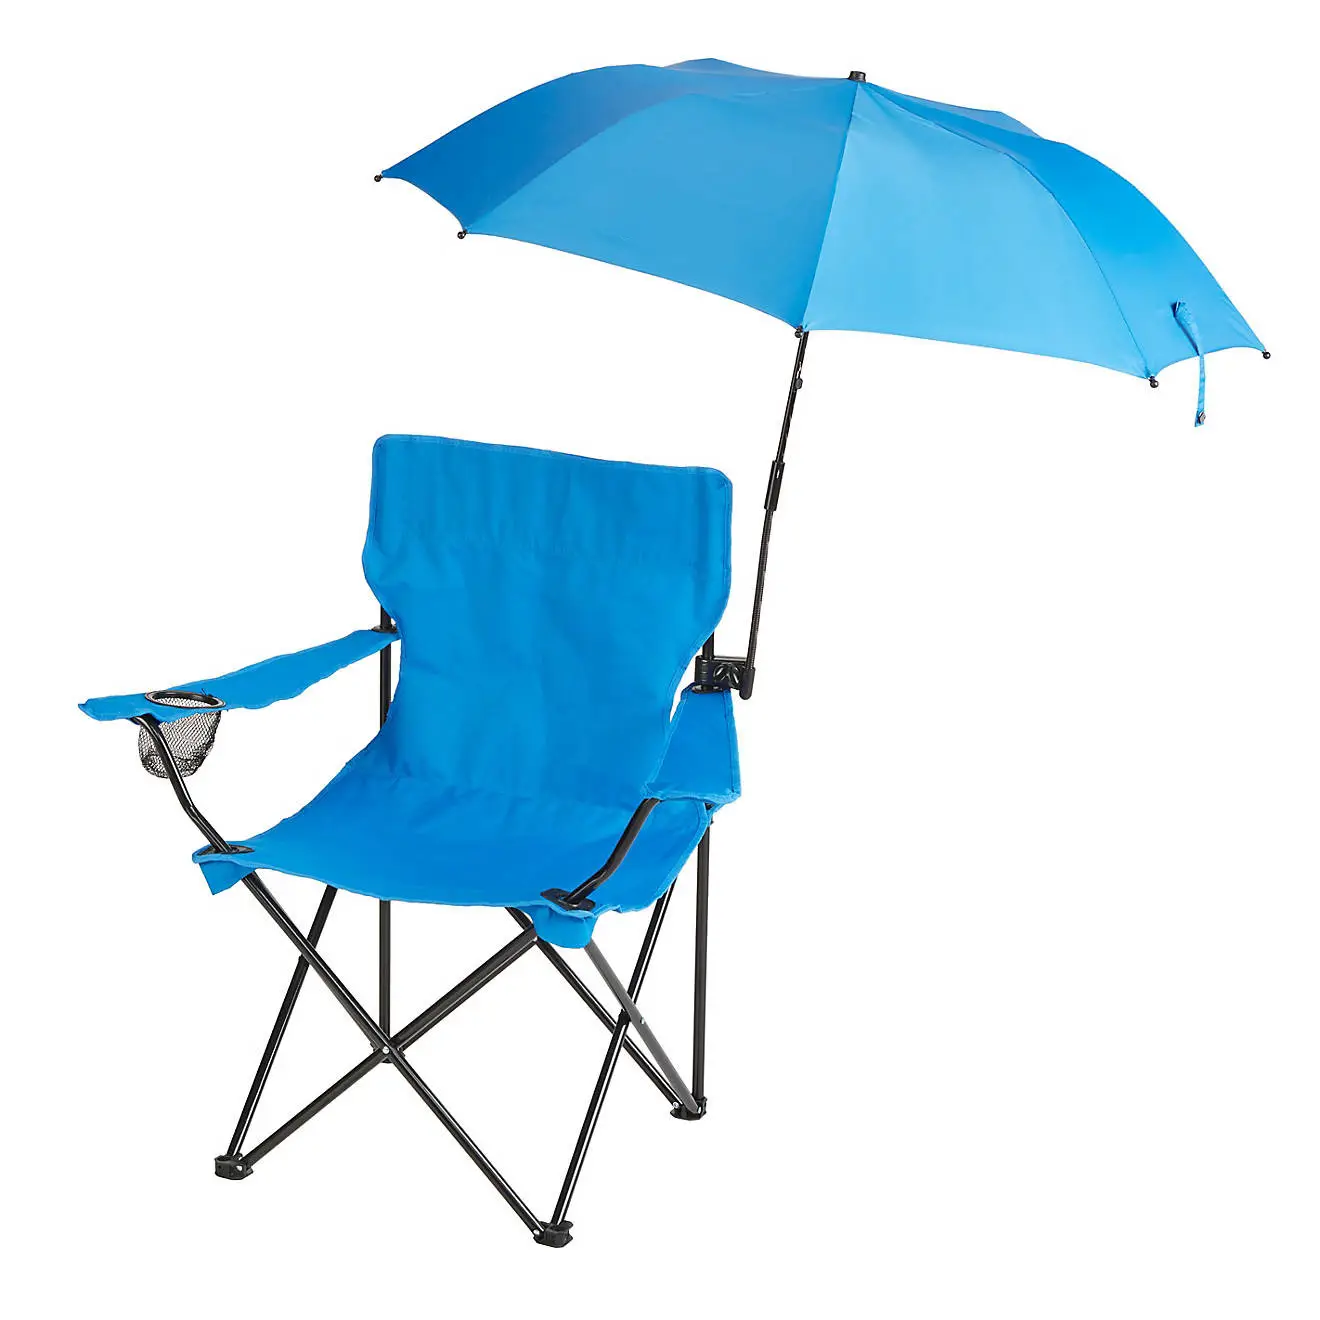 ユニバーサルクランプ付き日焼け止めシルバーコーティング屋外折りたたみビーチチェア傘